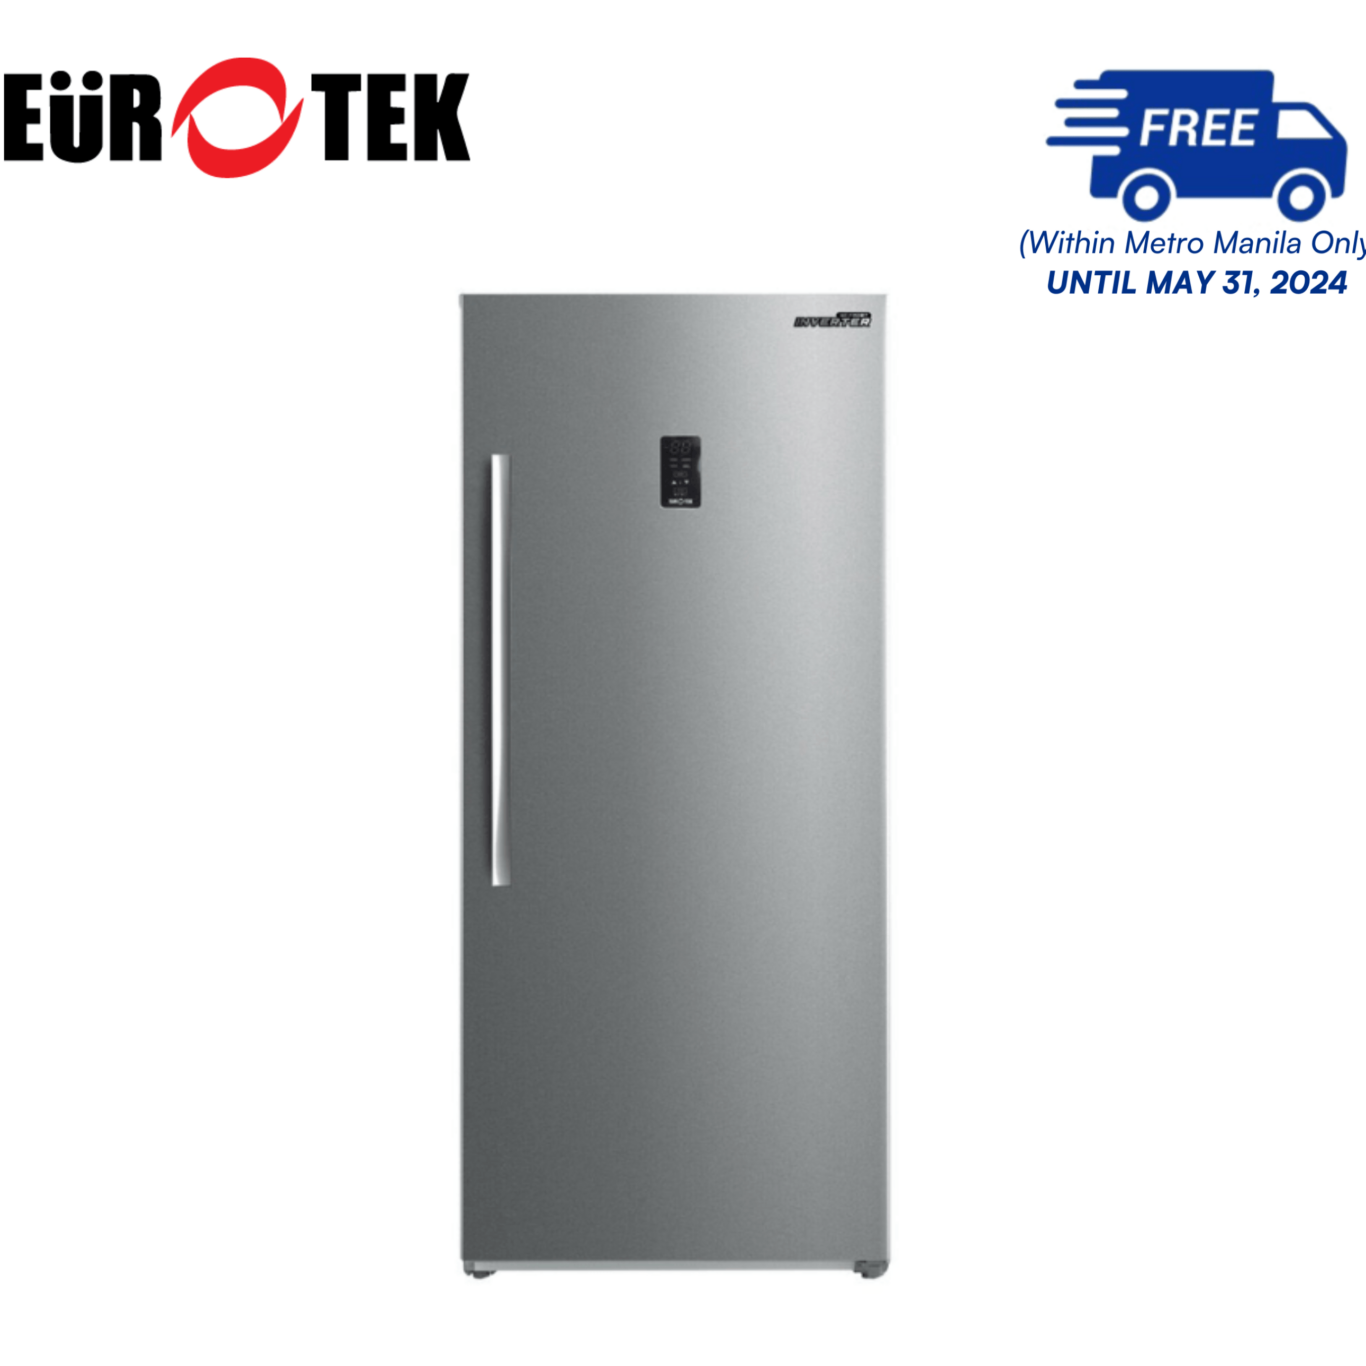 Eurotek EUF398IN